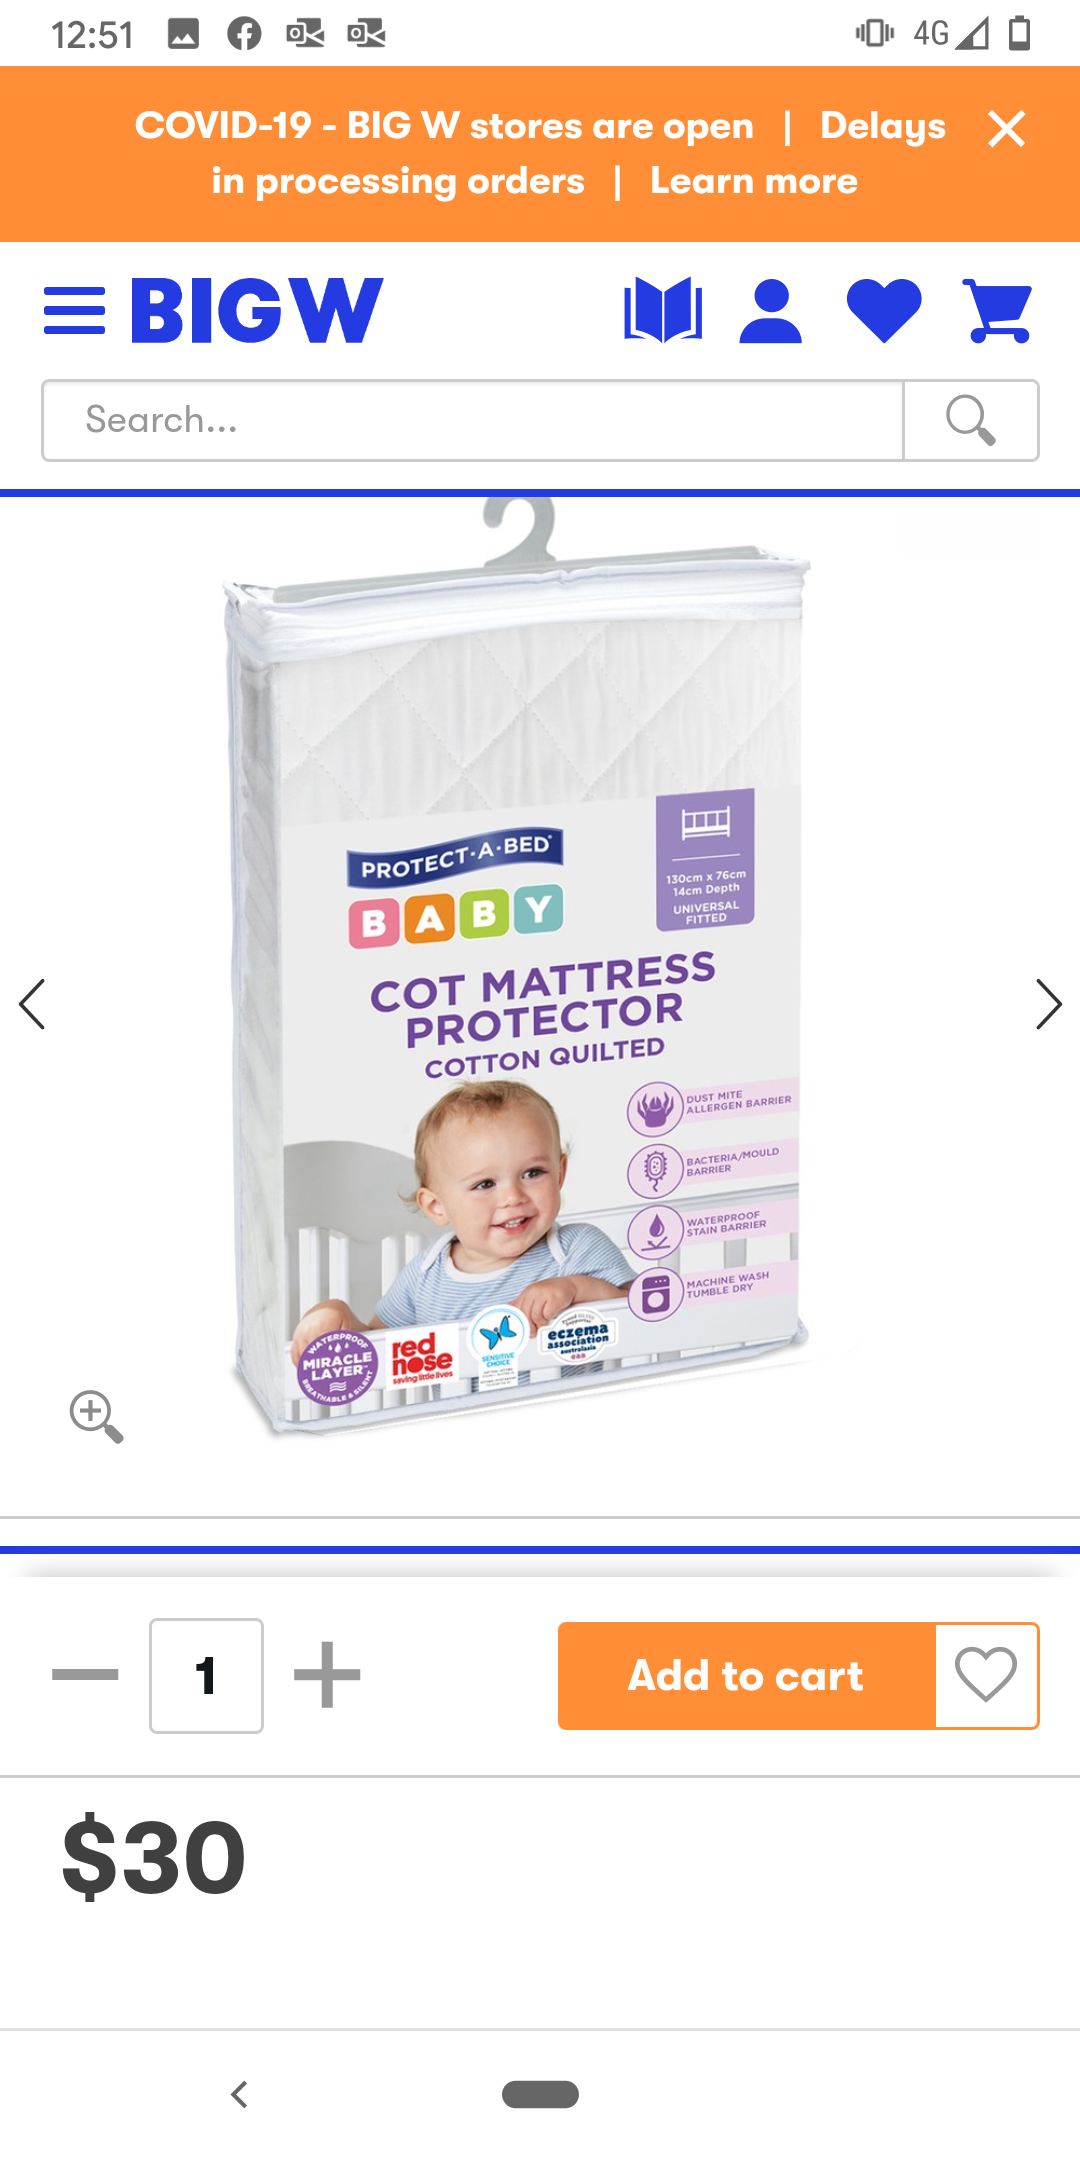 Cot mattress protector